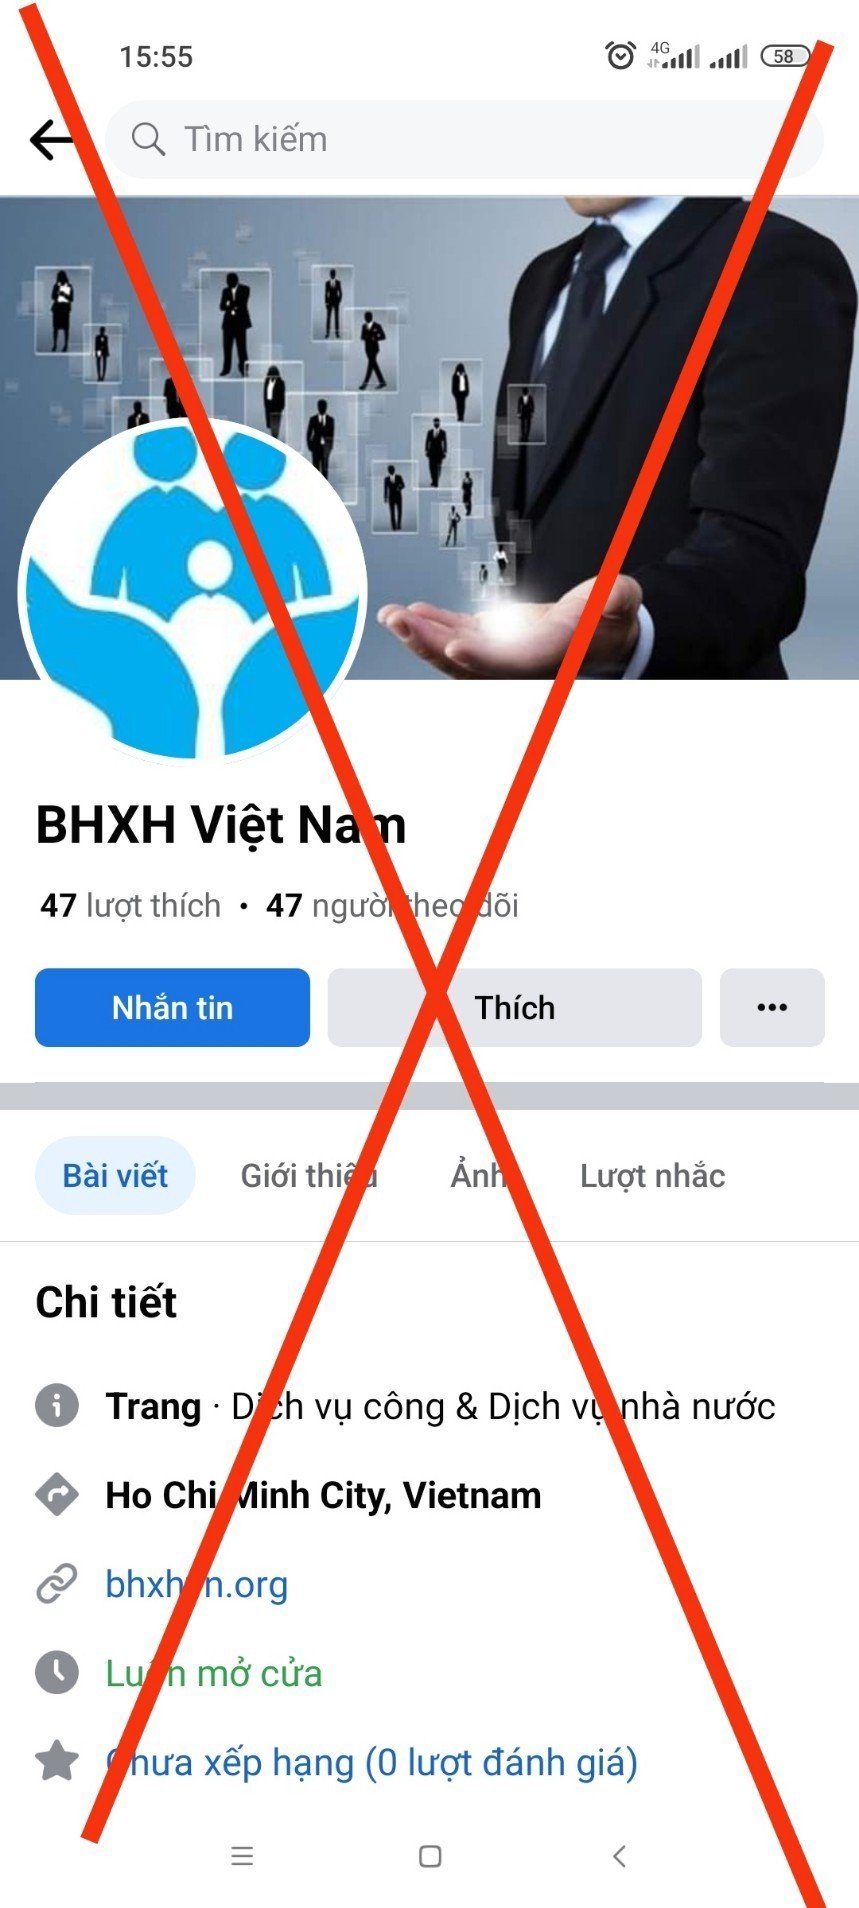 Đắk Lắk: Cảnh báo Fanpage giả mạo BHXH Việt Nam để lừa đảo chiếm đoạt tài sản